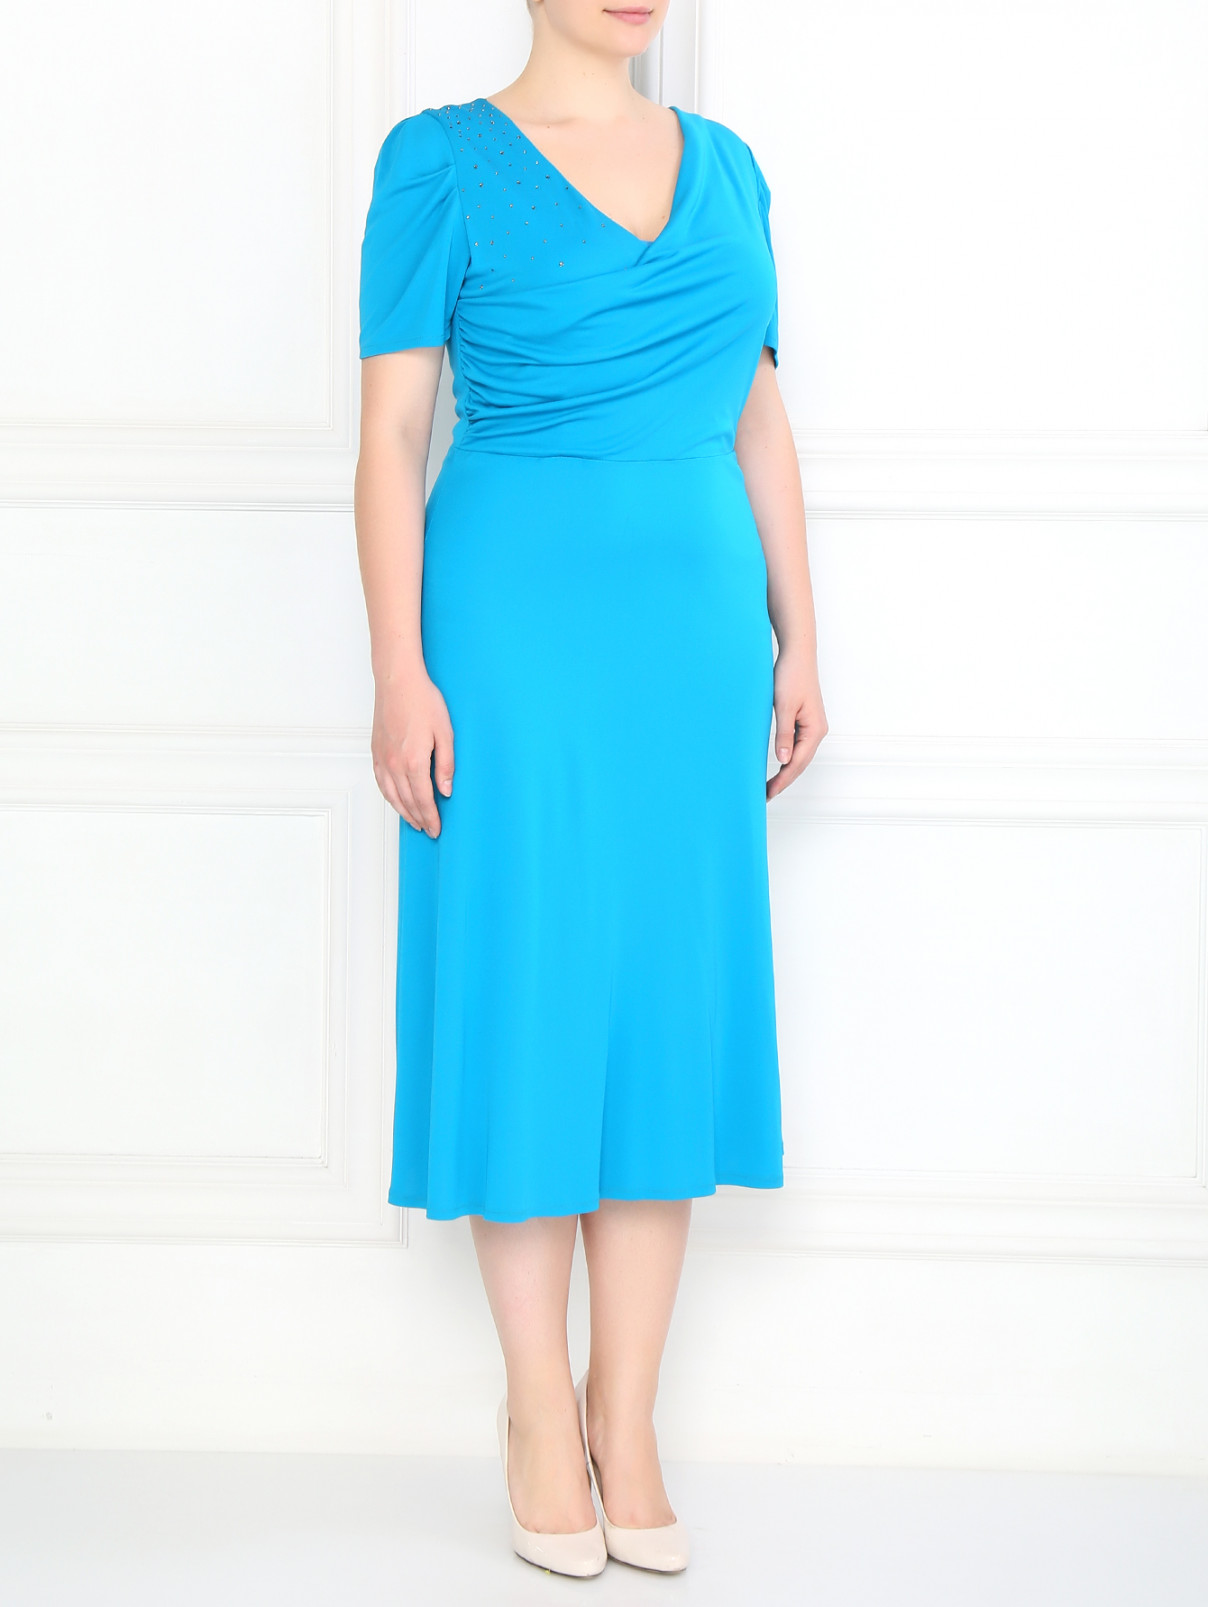 Платье с драпировкой декорированное стразами Marina Rinaldi  –  Модель Общий вид  – Цвет:  Синий